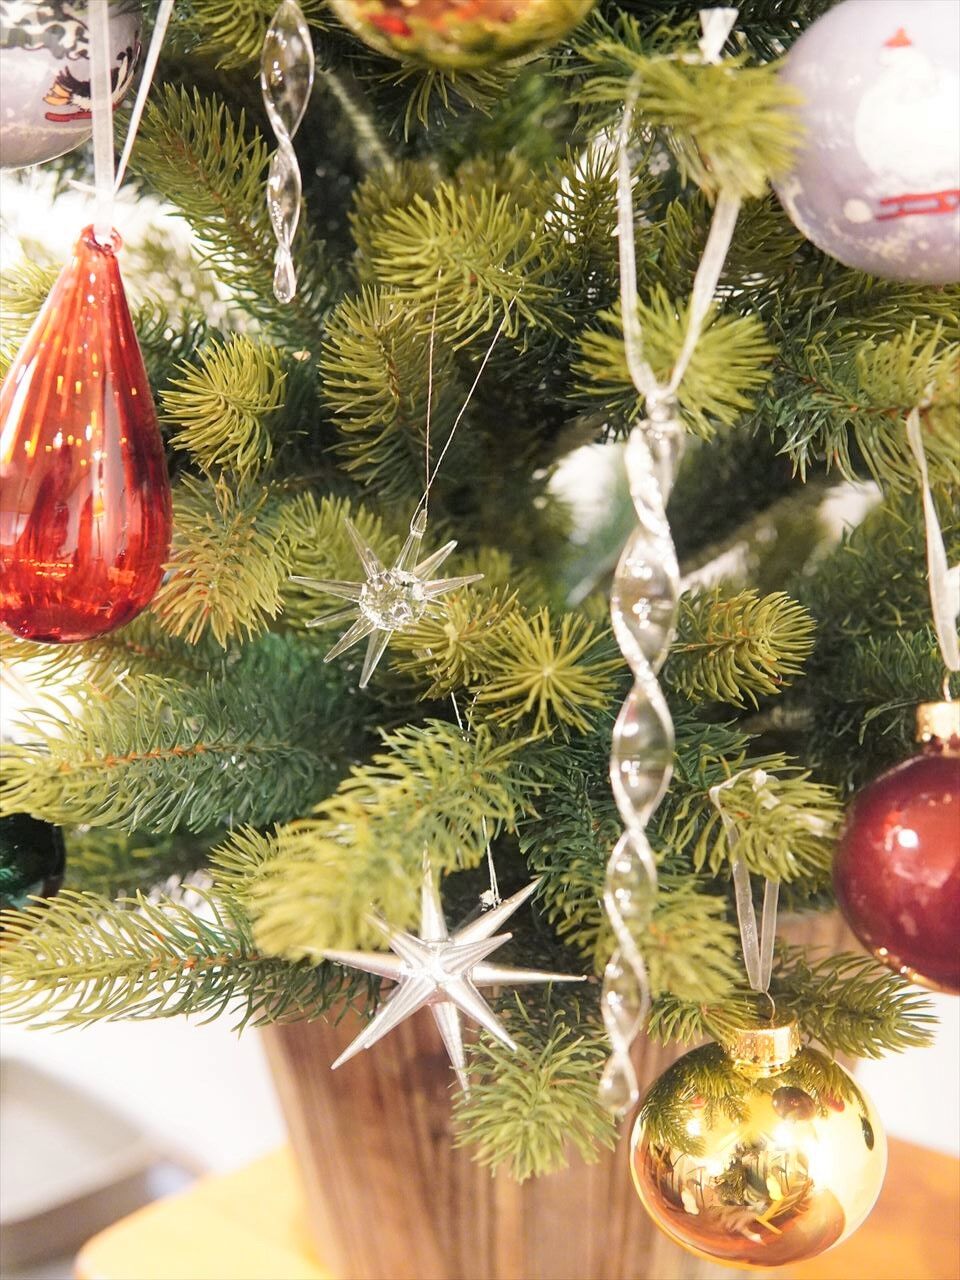 Ikeaのクリスマスツリーオーナメント 今年は華やかデコレーション 10年後も好きな家 家時間が好きになる 家事貯金 北欧インテリア Powered By ライブドアブログ